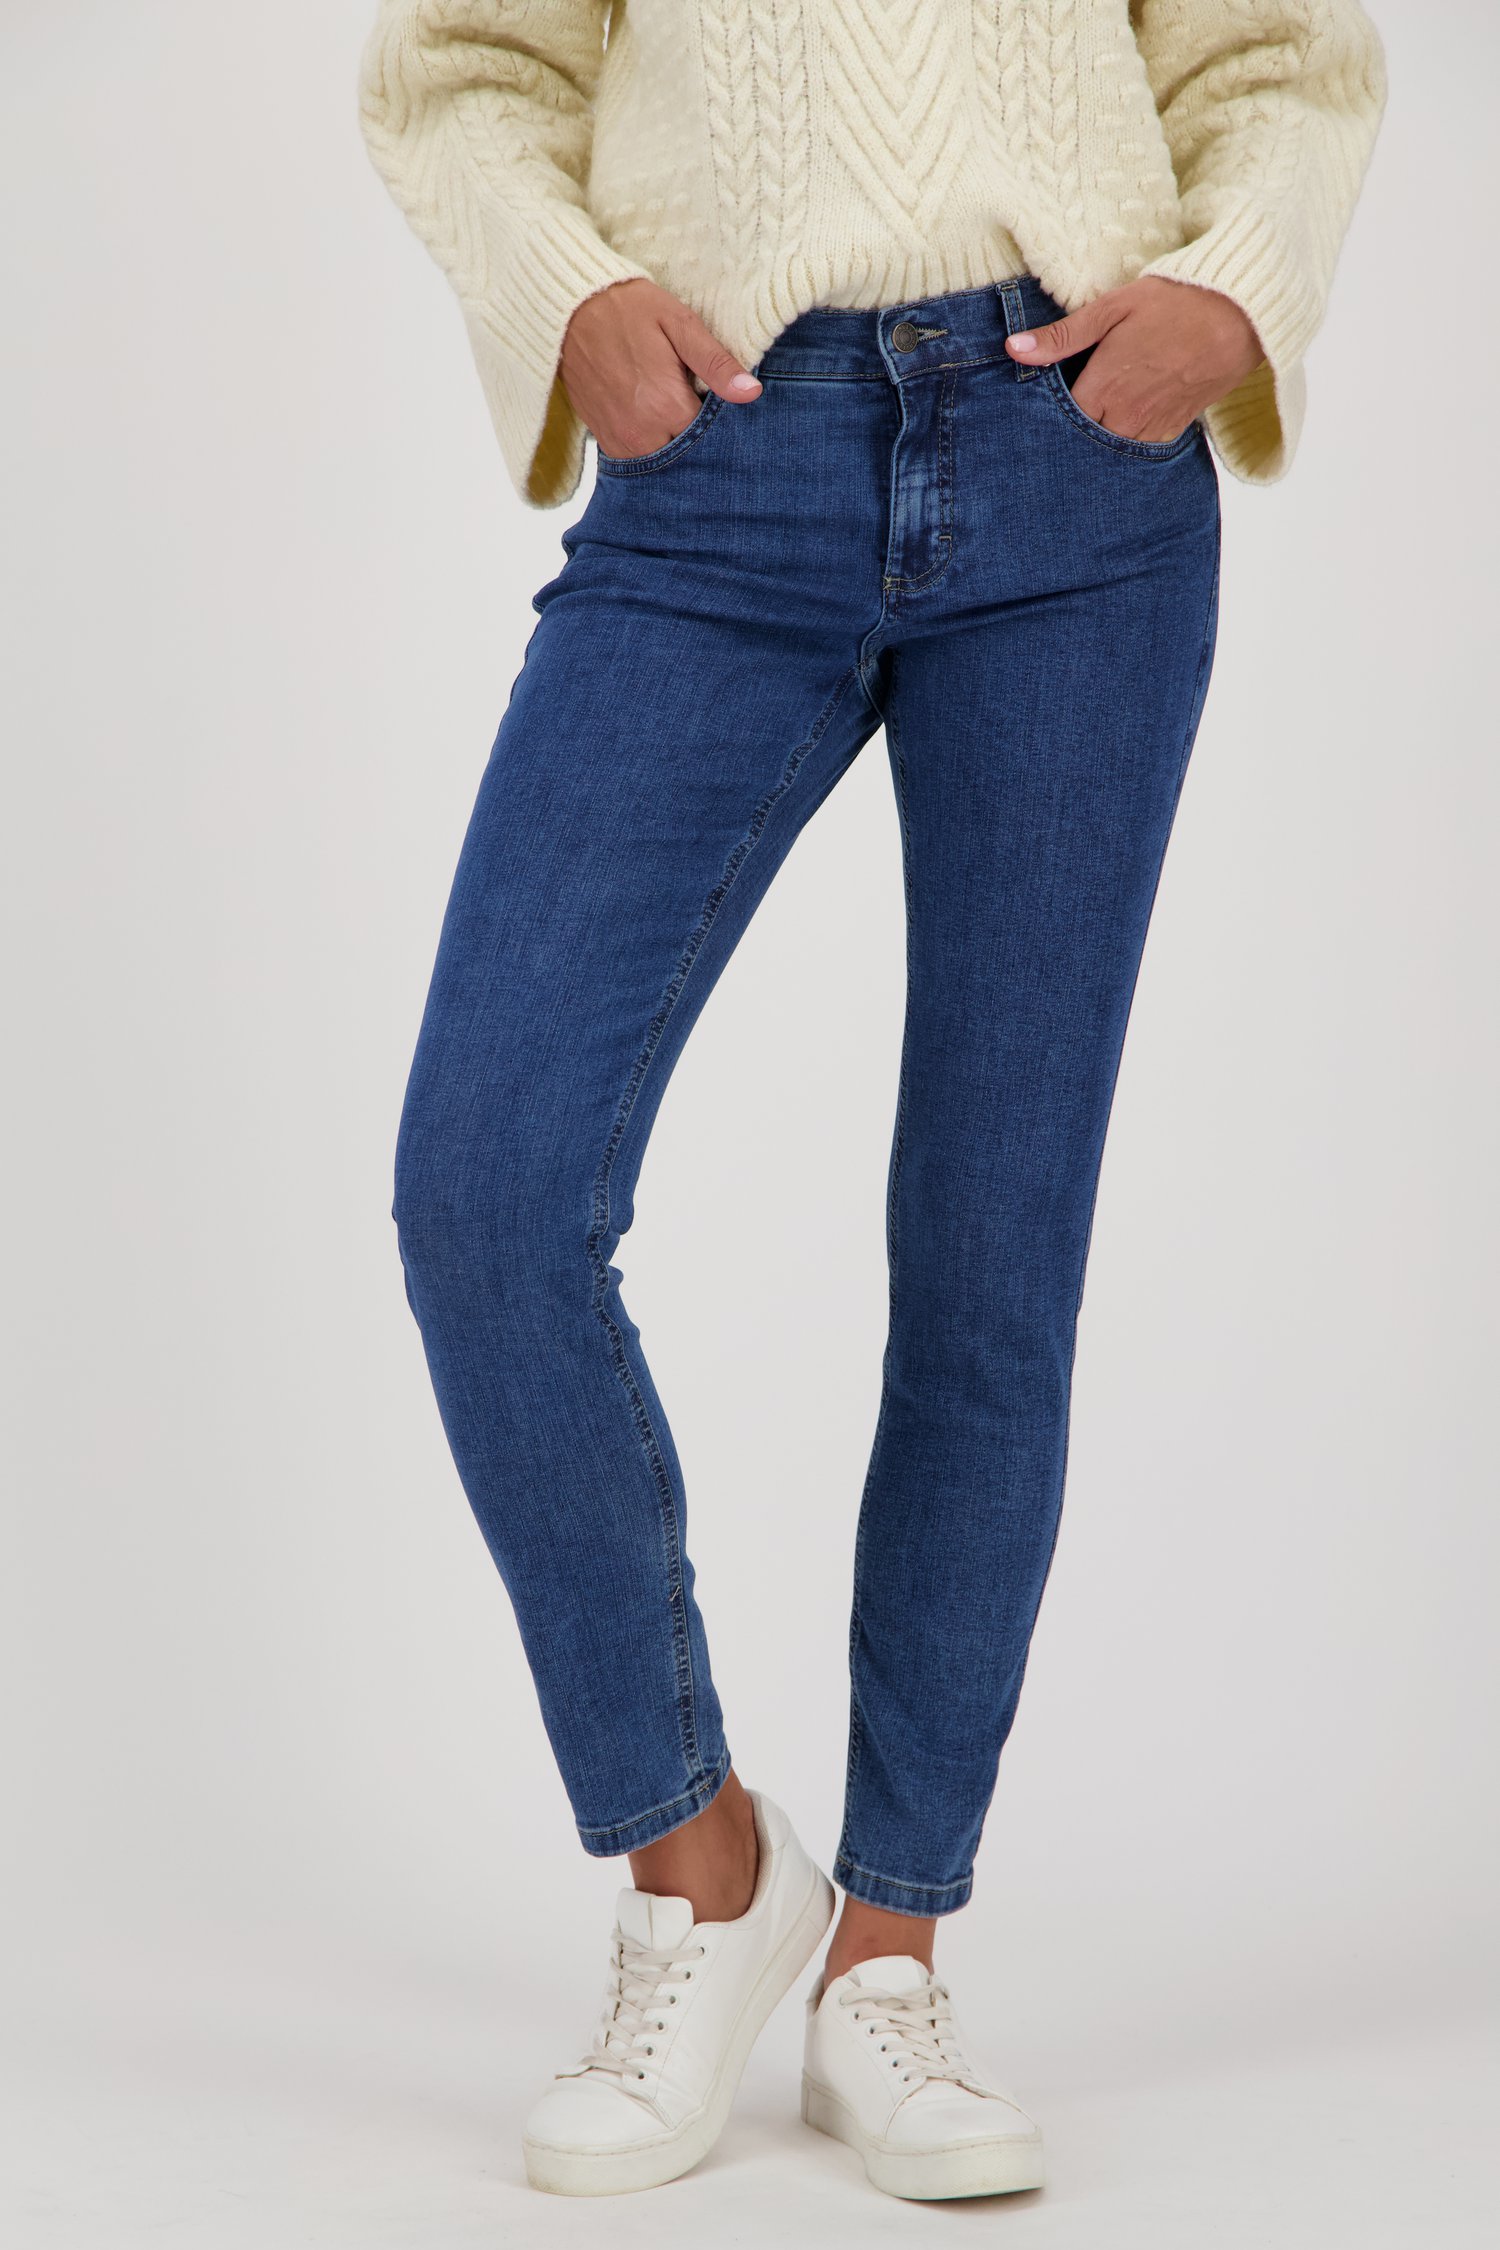 Mediumblauwe jeans - Skinny - L30 van Angels voor Dames